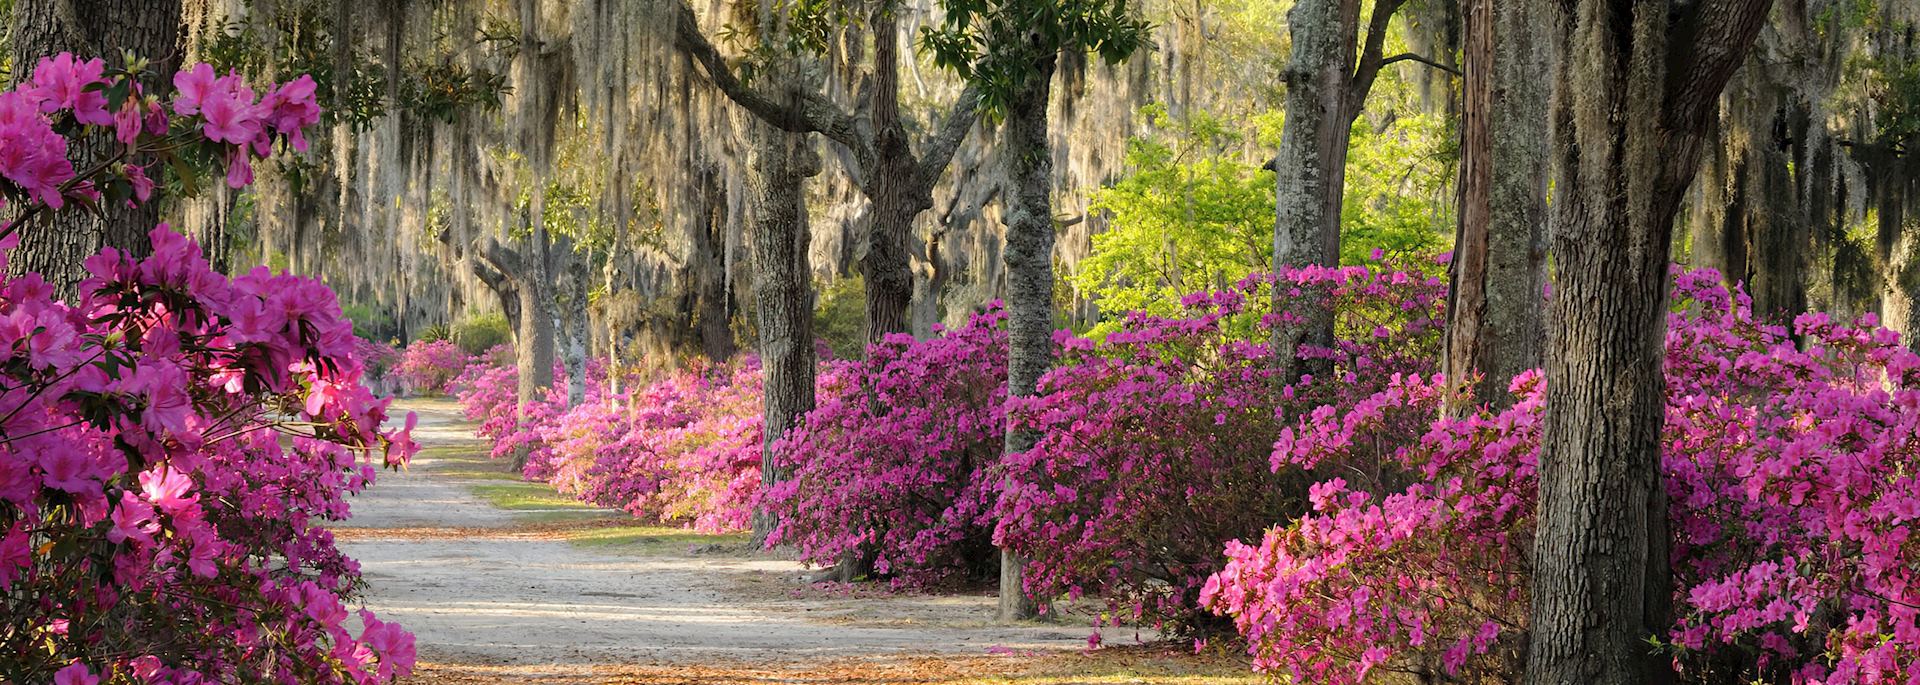 Live oaks and azaleas in Savannah